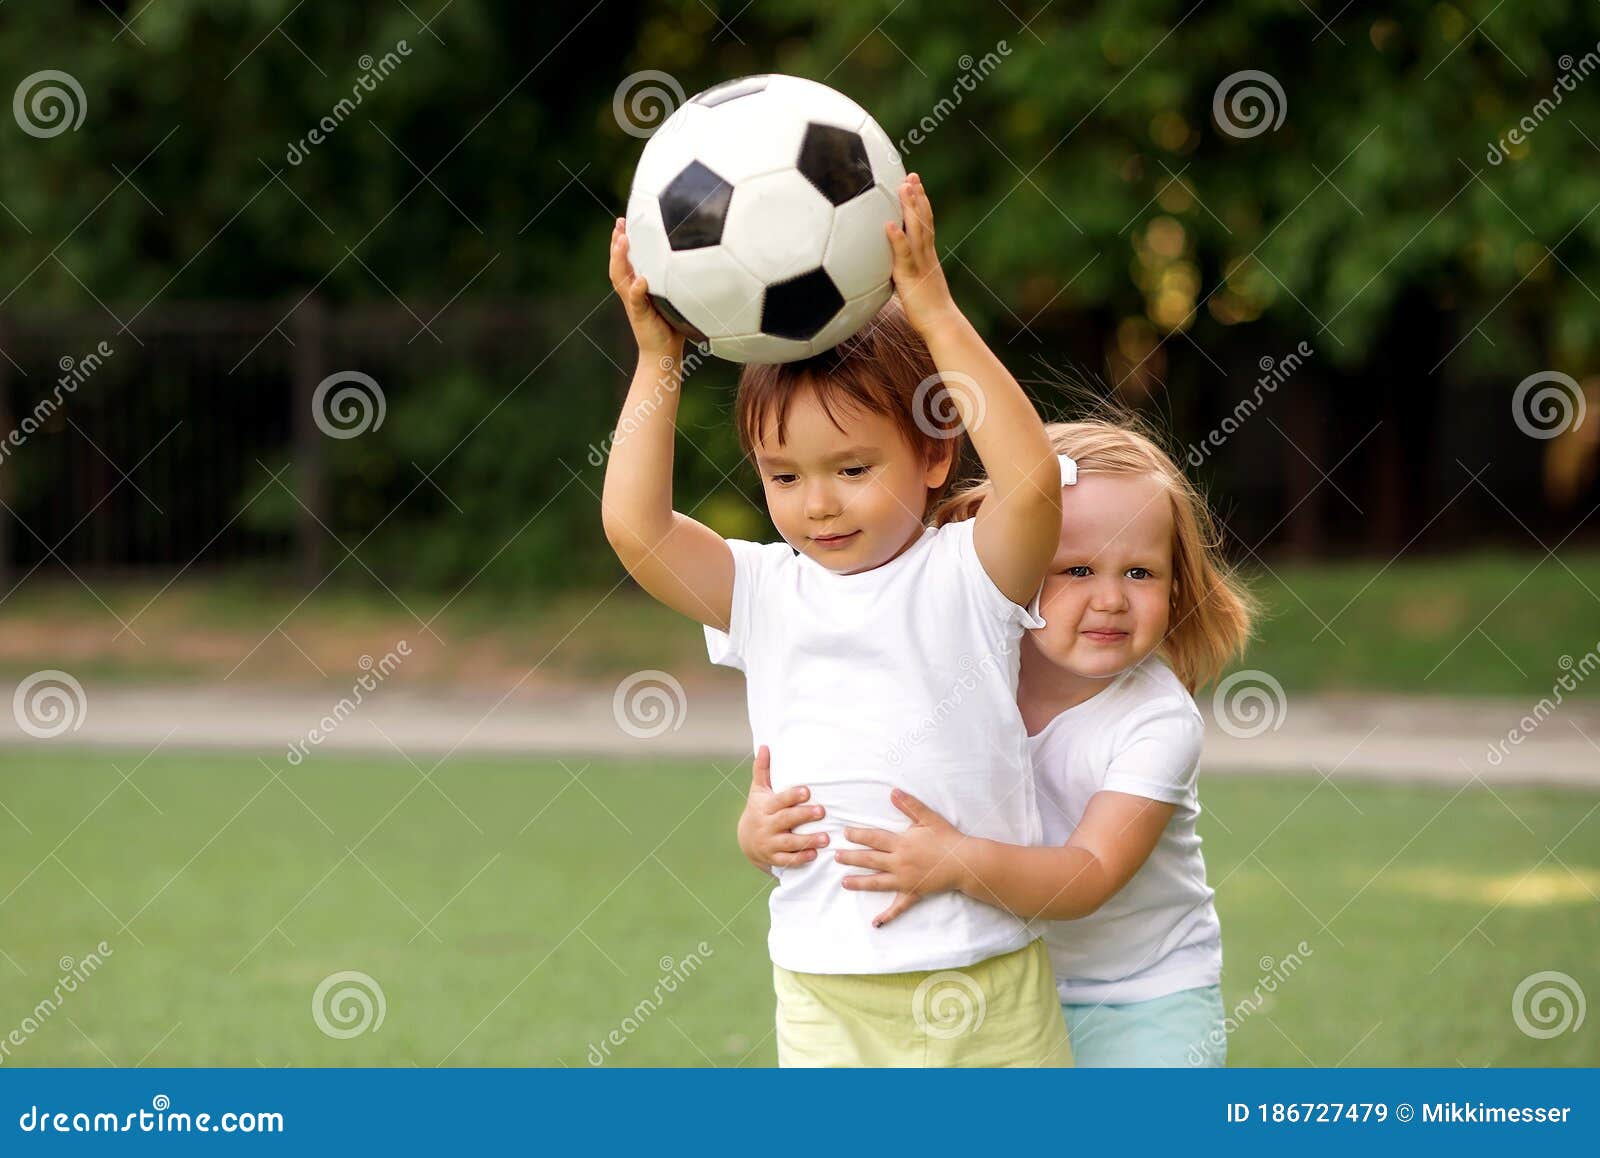 9 inspirações para meninos e meninas brincarem com bola